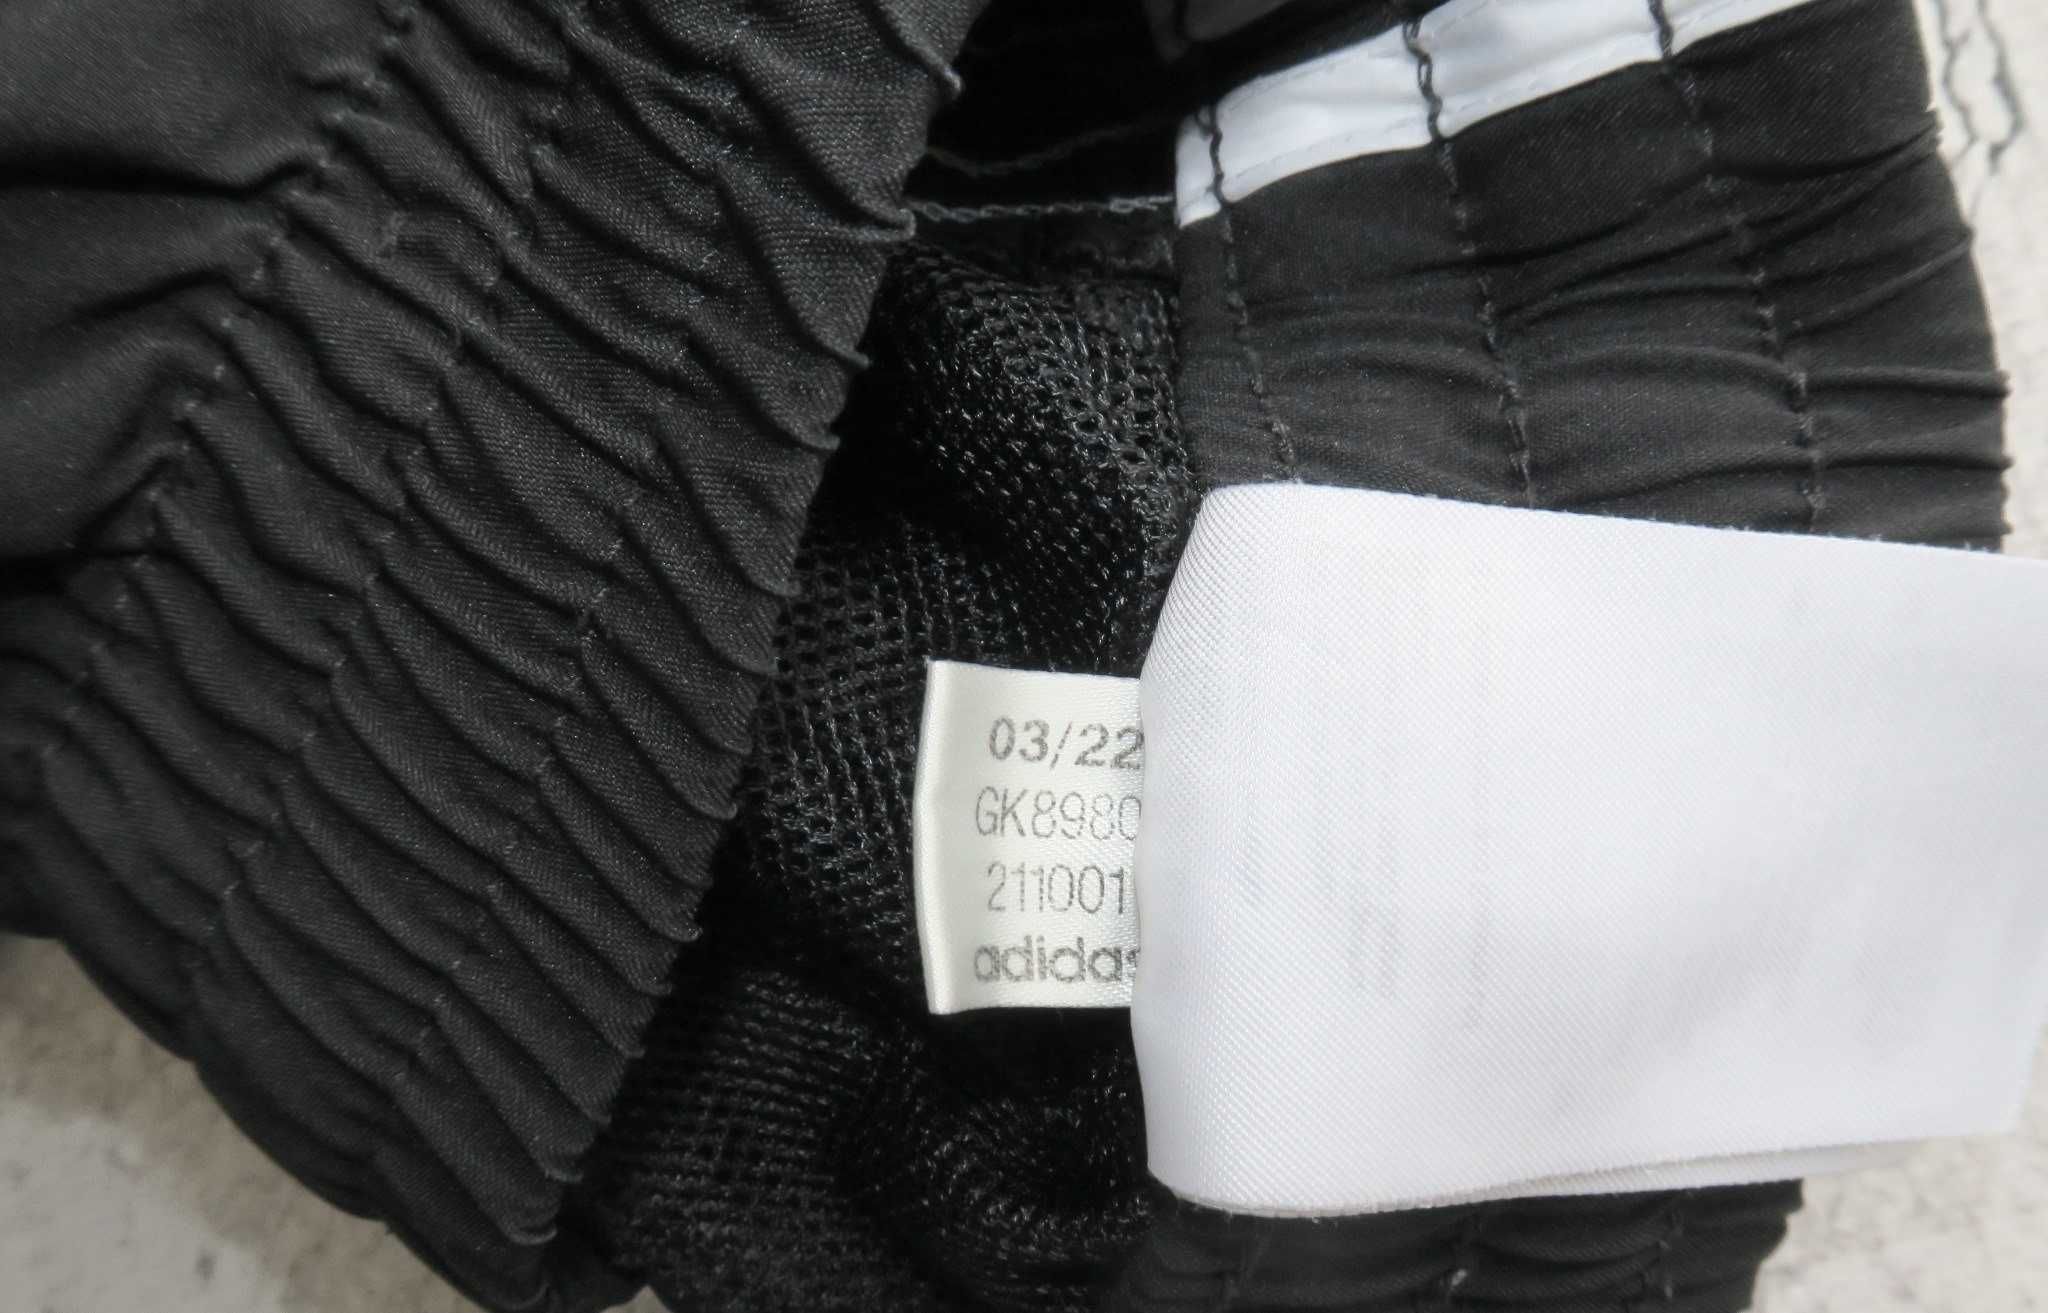 Adidas spodnie dresowe zwężane XL